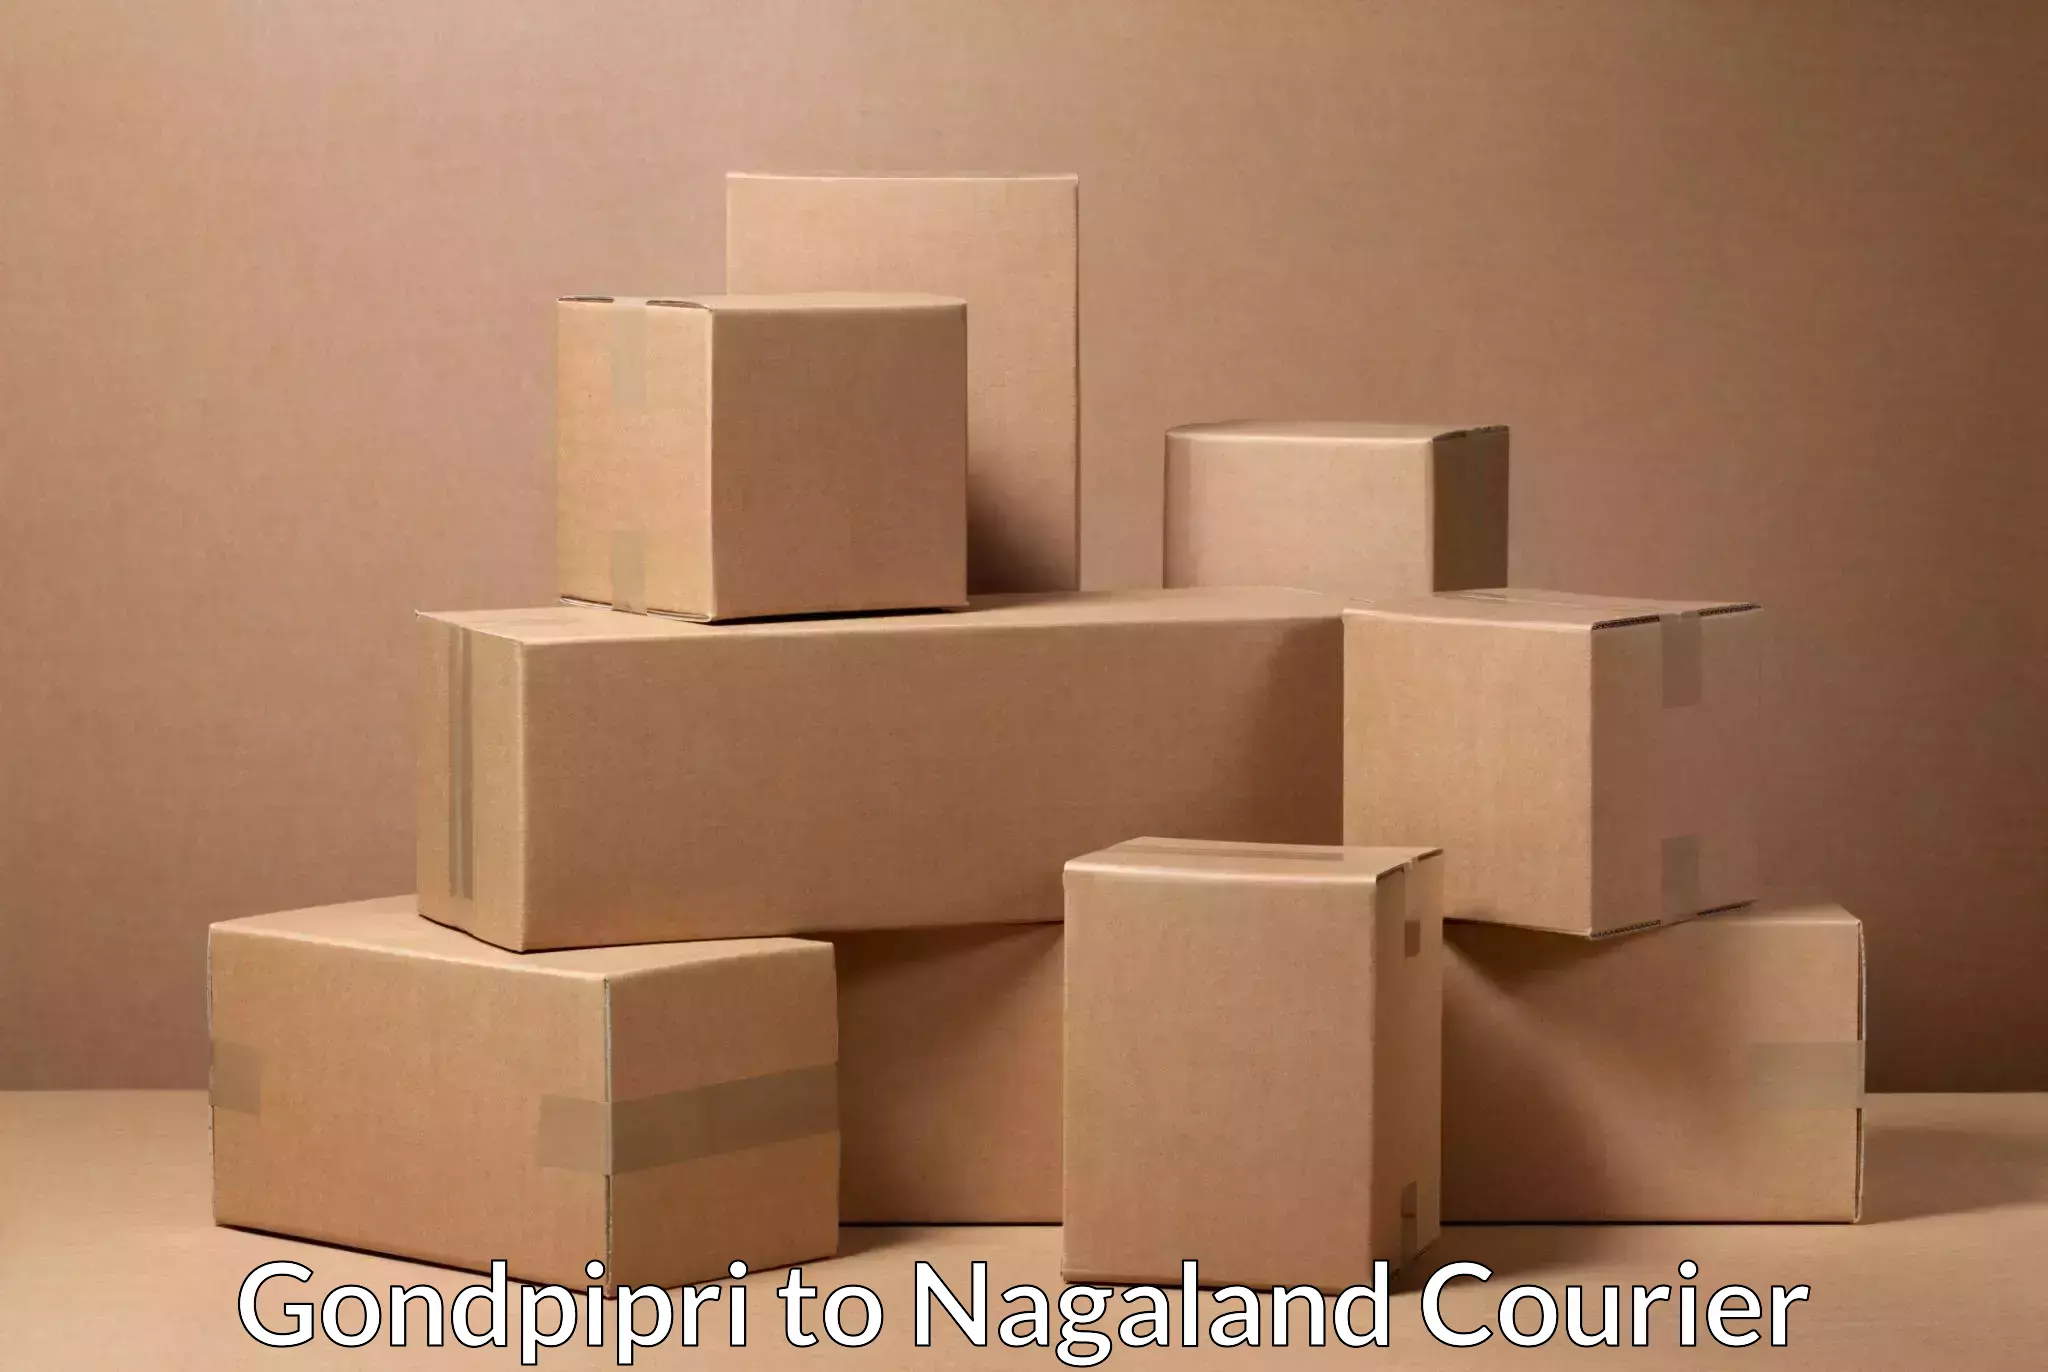 Smart parcel delivery Gondpipri to Nagaland